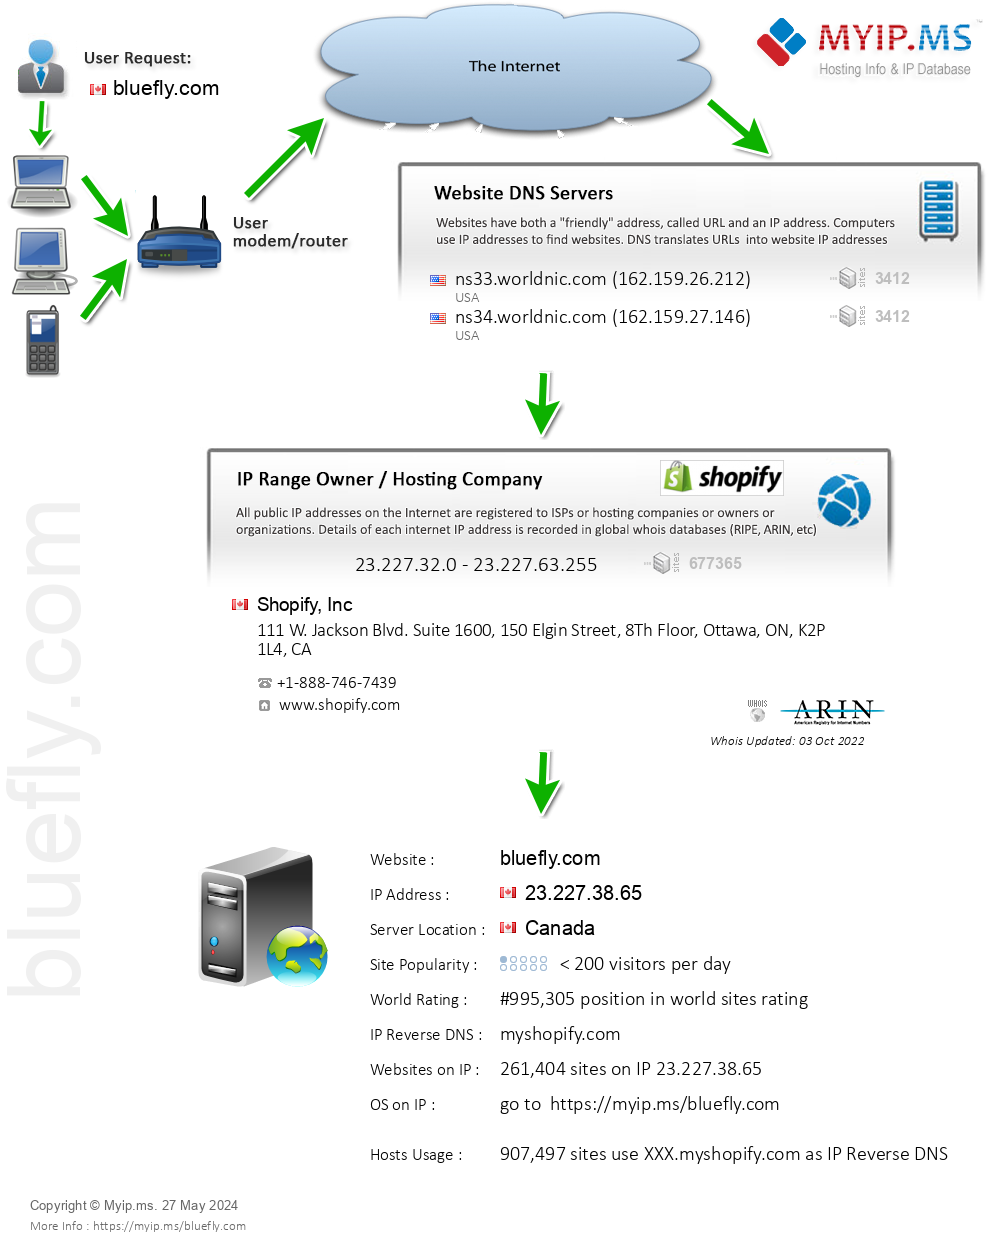 Bluefly.com - Website Hosting Visual IP Diagram